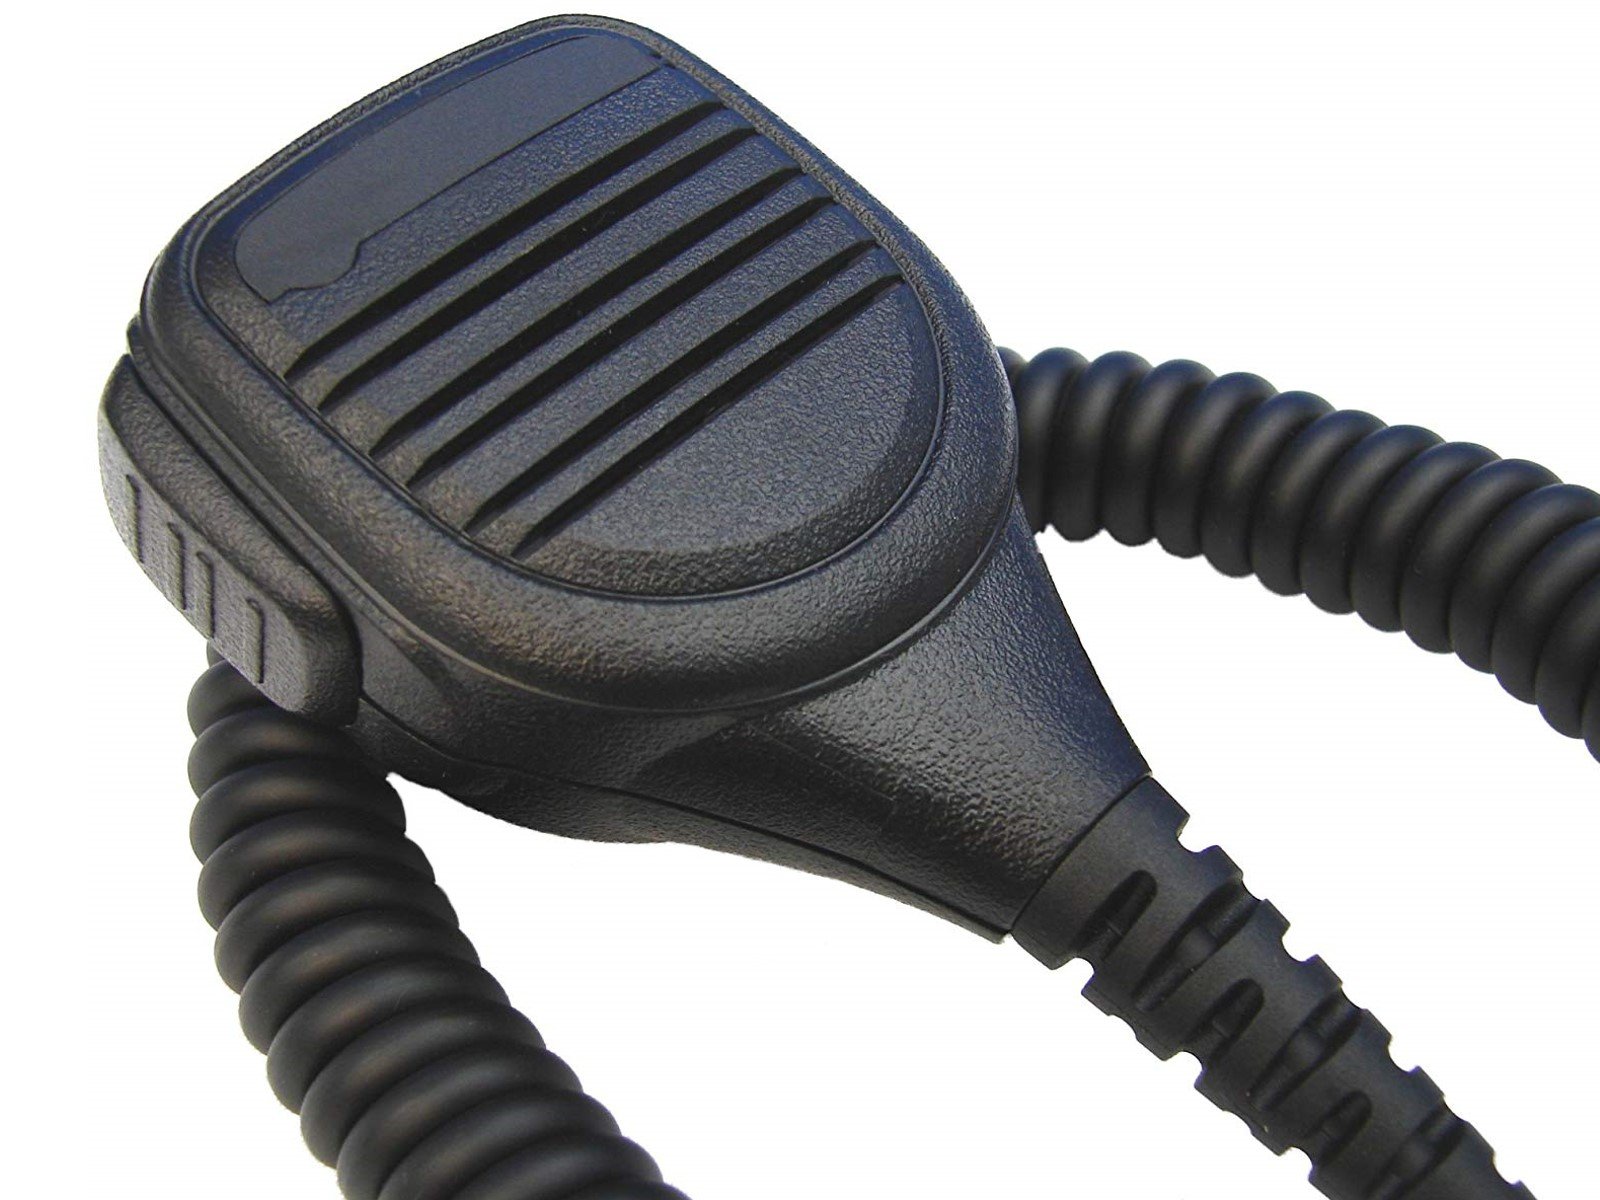 Lautsprechermikrofon robust HM250-GP900